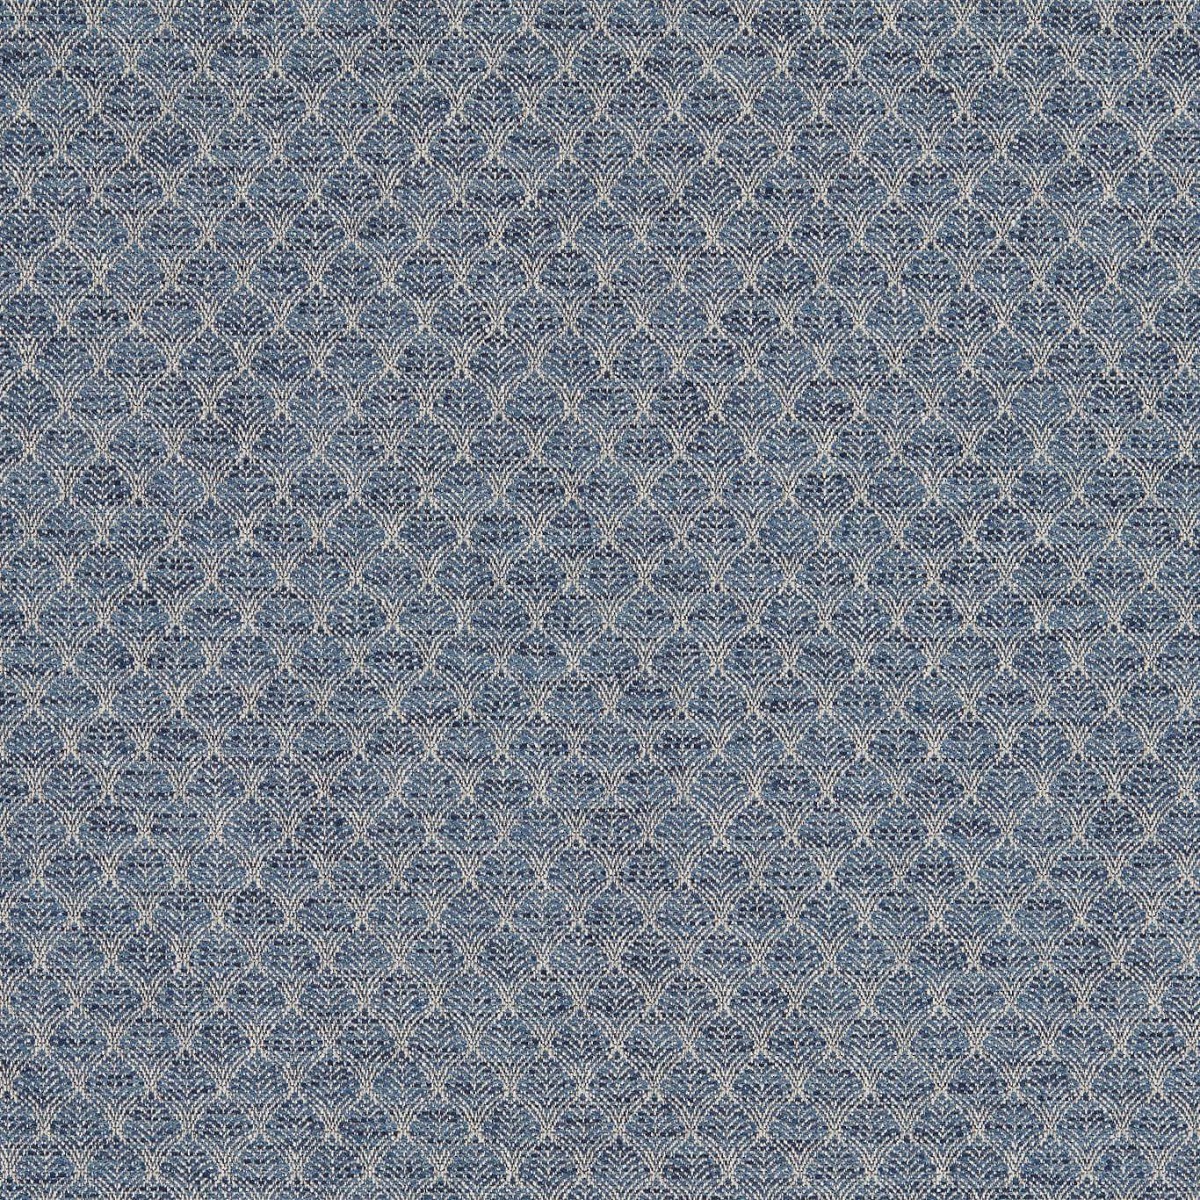 Trelica Denim Fabric by Clarke & Clarke